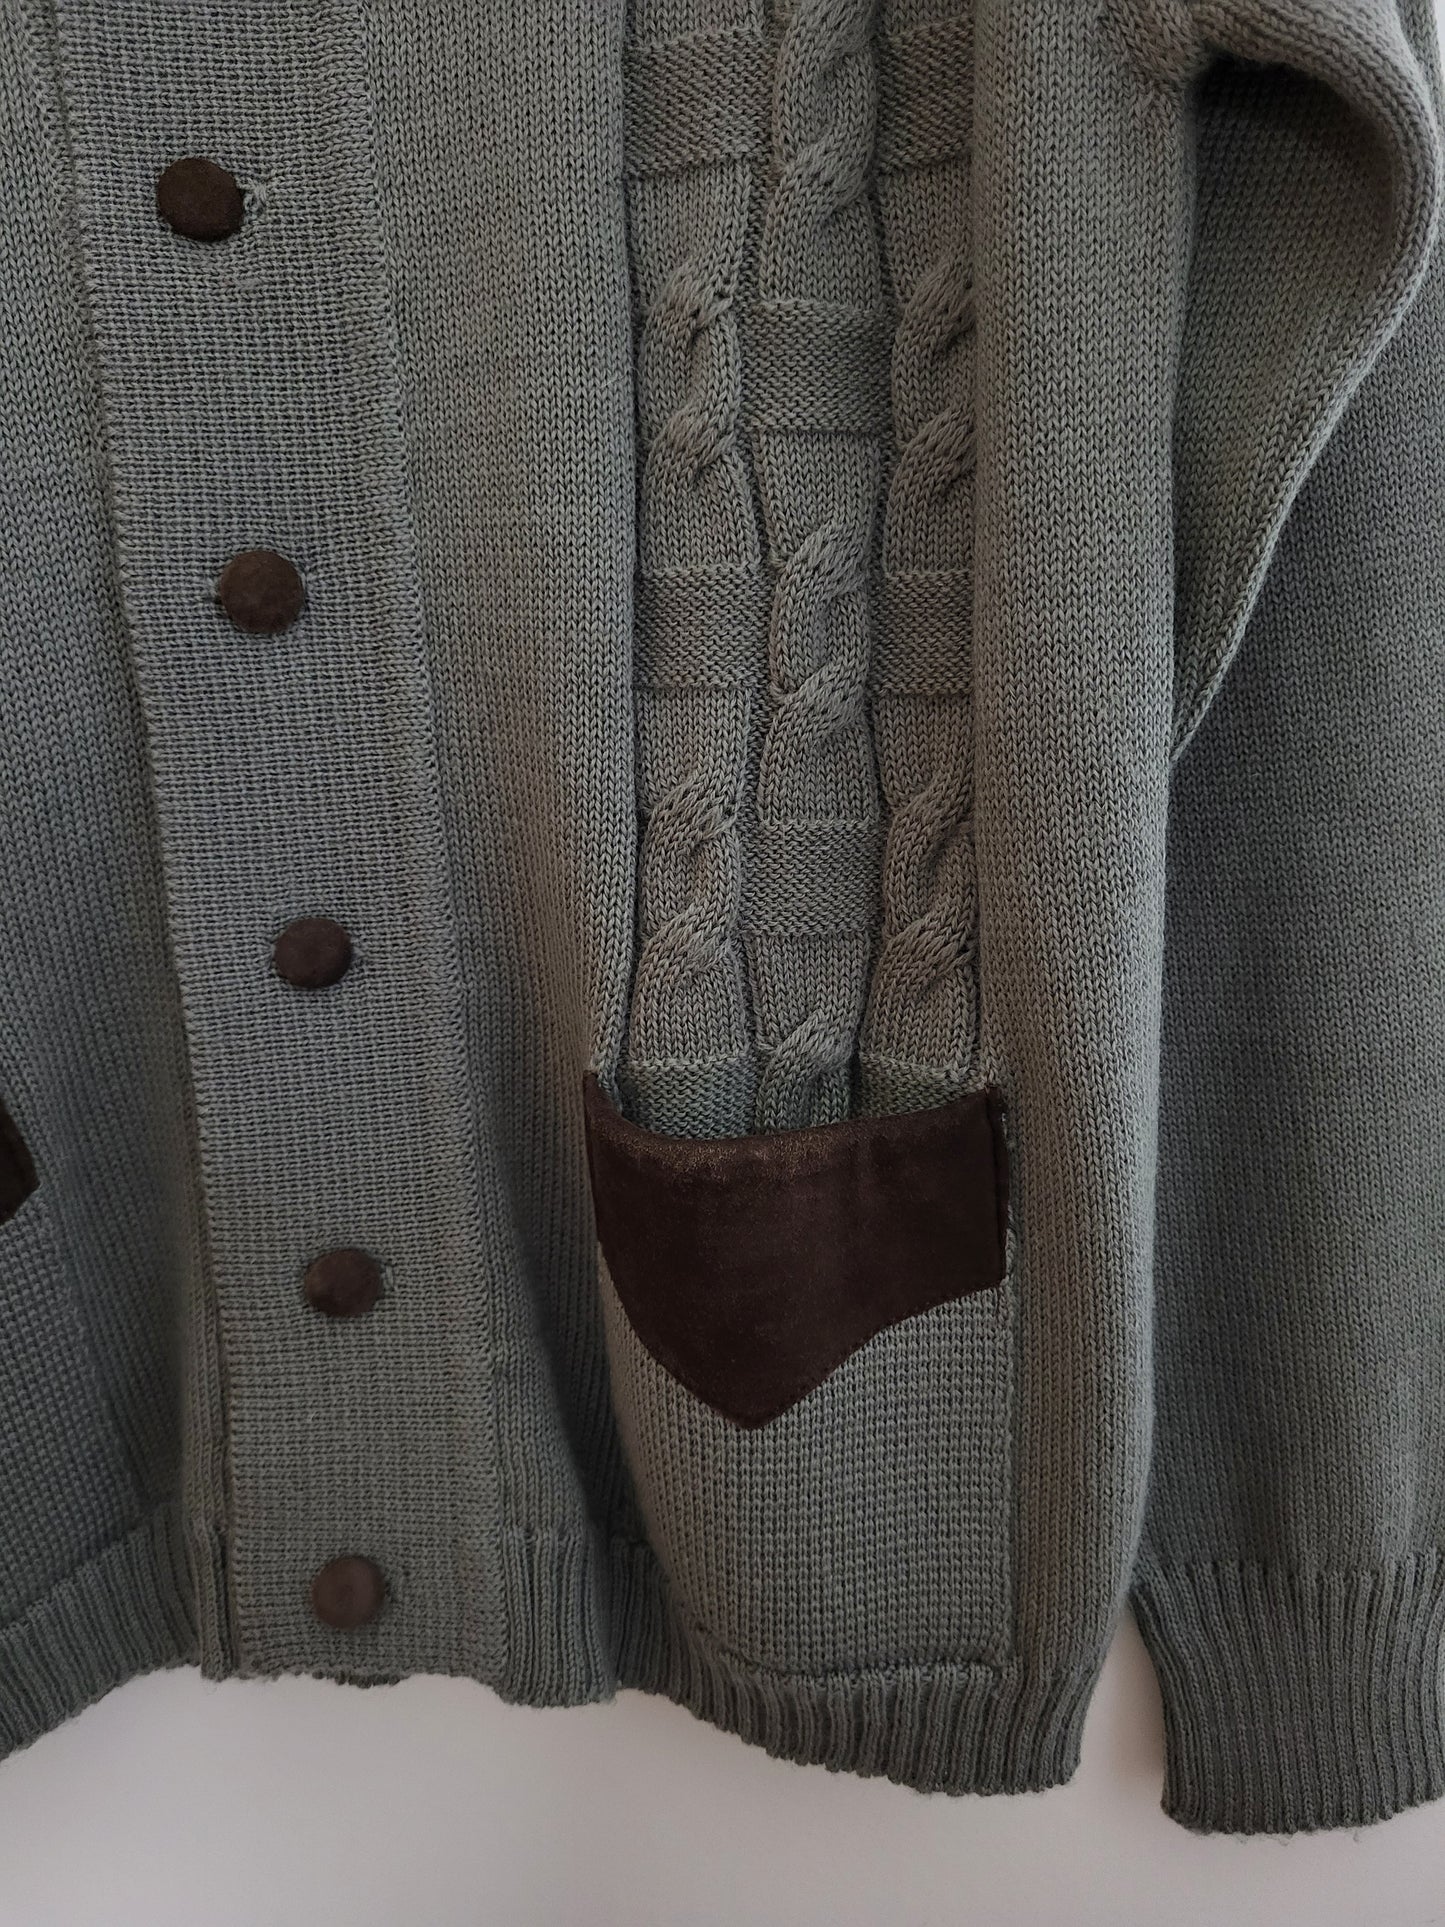 Vintage LEPI - Pullover/Strickjacke - Muster - Vintage Italy - Oliv/Grau - Herren - M